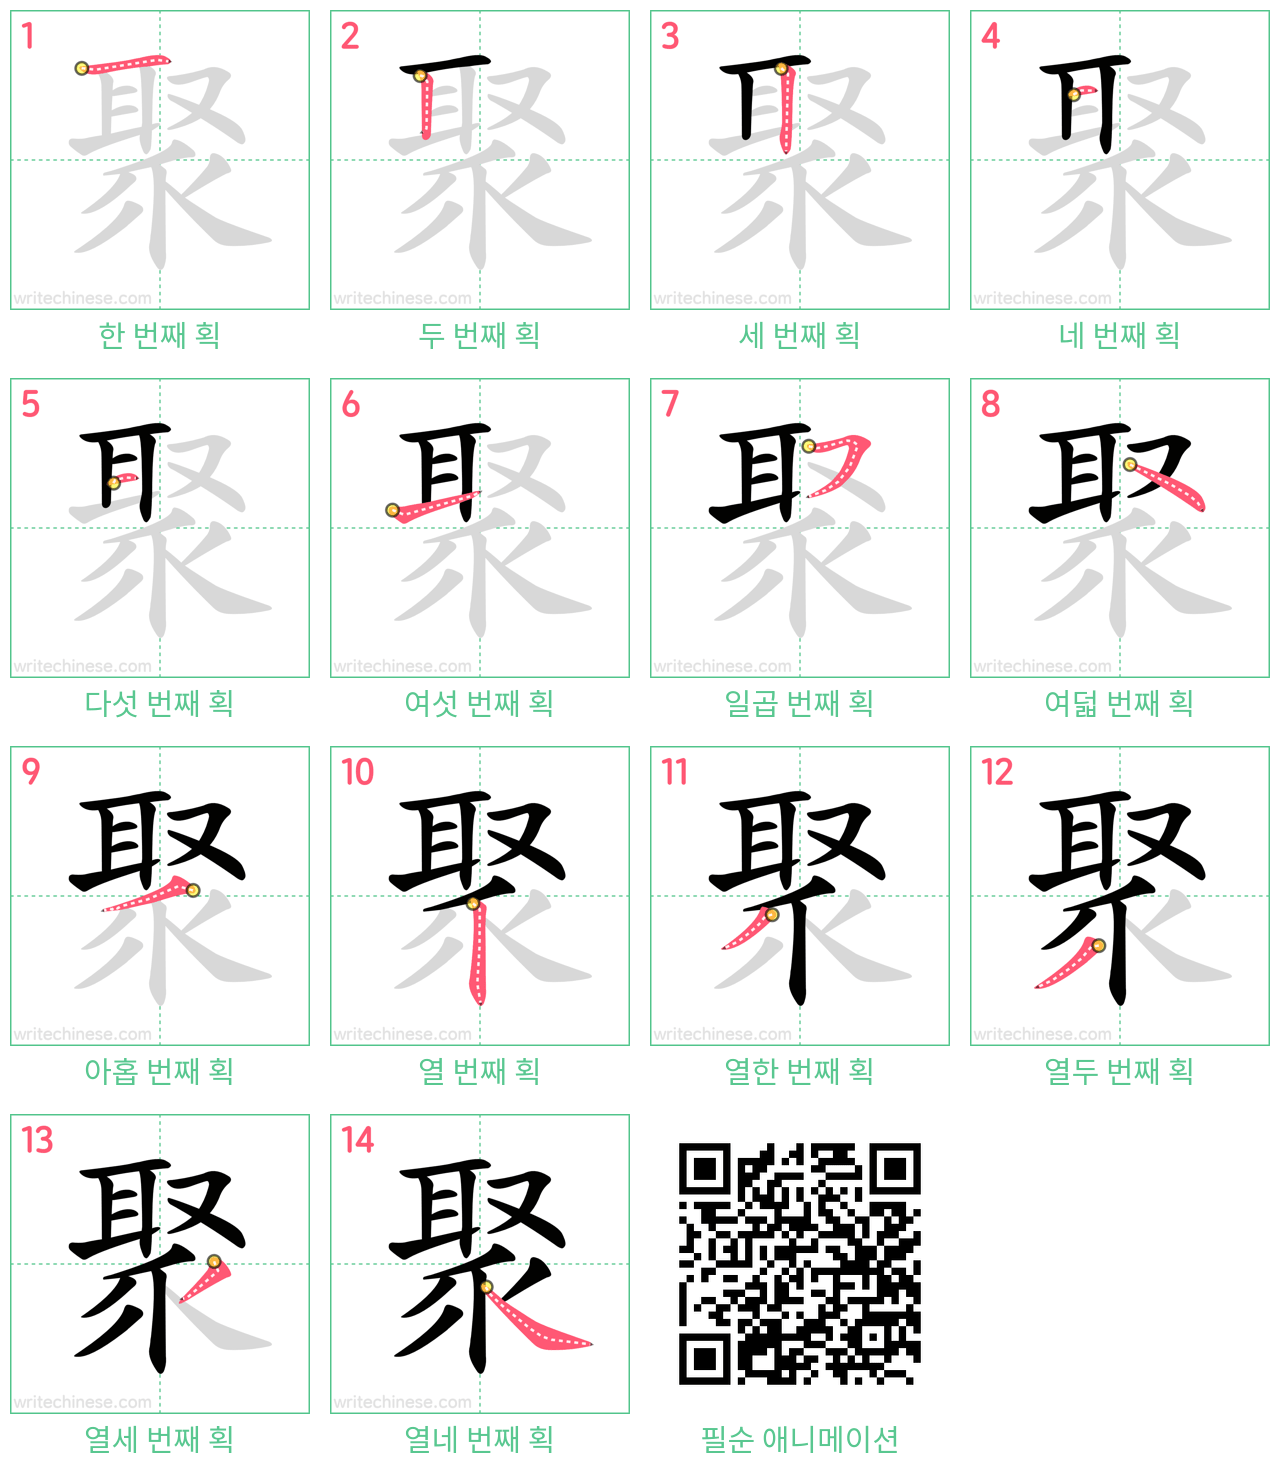 聚 step-by-step stroke order diagrams